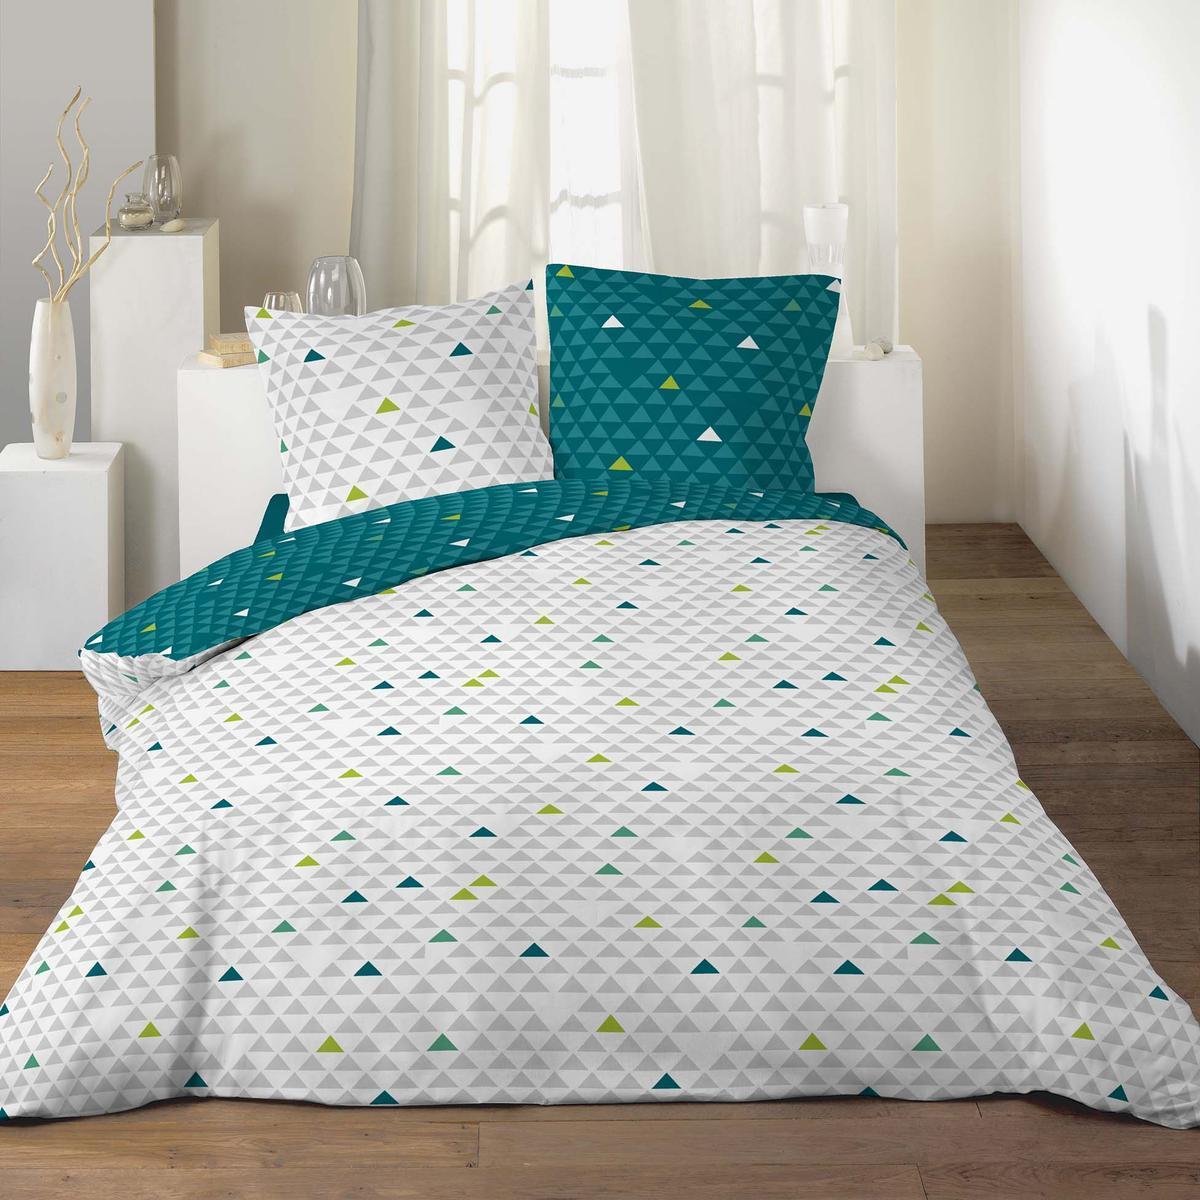 Parure de lit à motifs - 240 x 220 cm - Vert, blanc